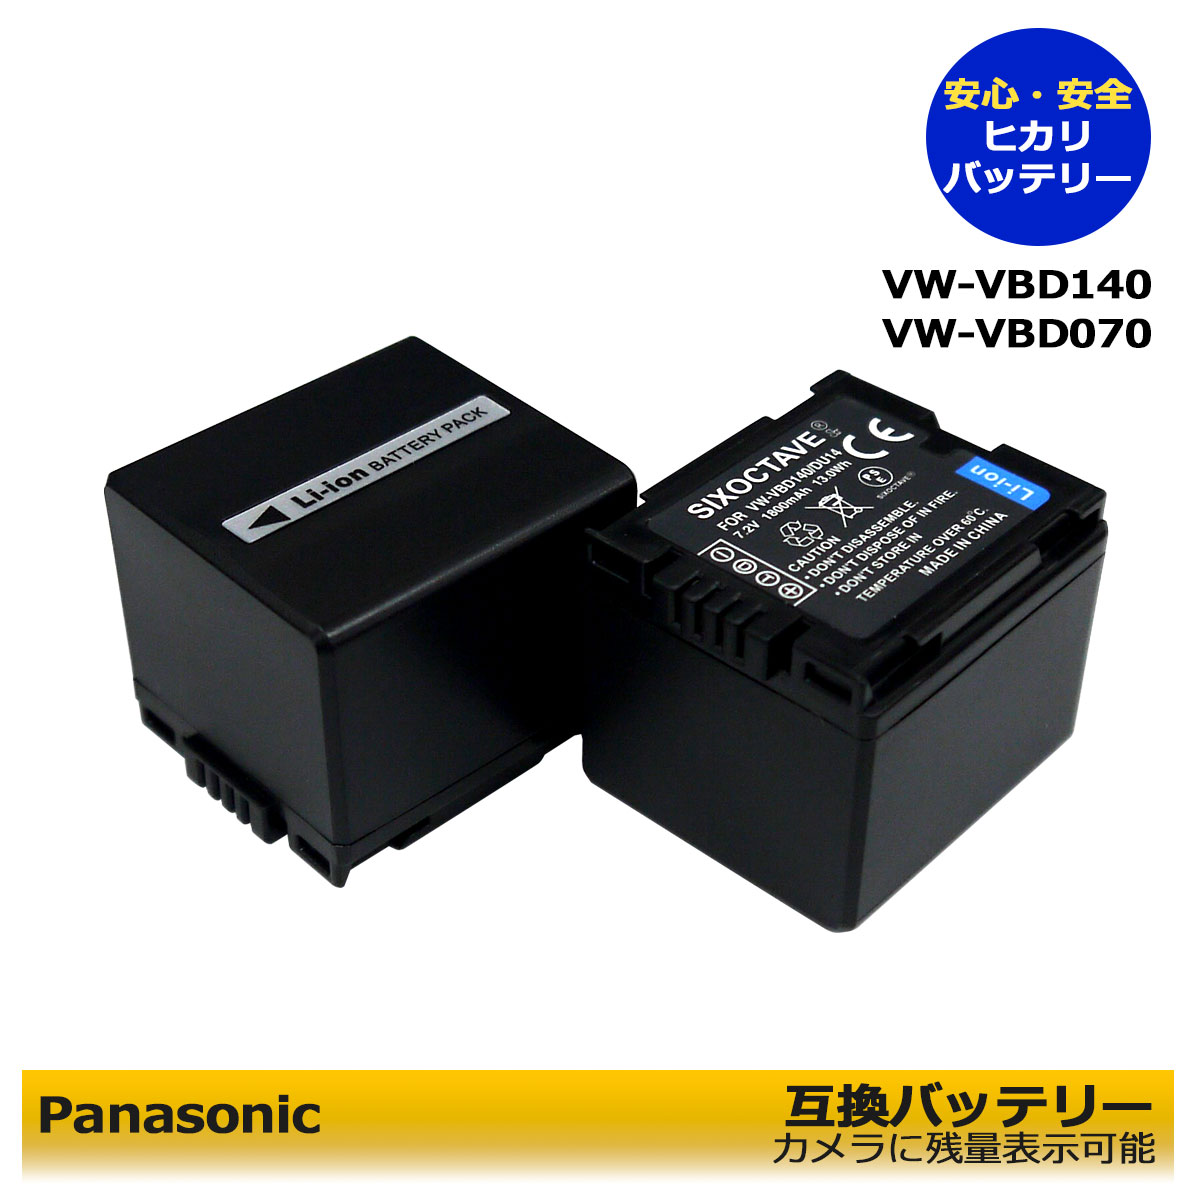 残量表示可能 PANASONIC VW-VBD140 互換バッテリー 2個セットPV-GS83 / PV-GS85 / PV-GS120 / PV-GS150 / PV-GS180 / PV-GS200 / PV-GS250 / PV-GS300 / PV-GS320 / PV-GS400 / PV-GS500 / PV-GS50K / PV-GS50S / SDR-H18 / SDR-H20